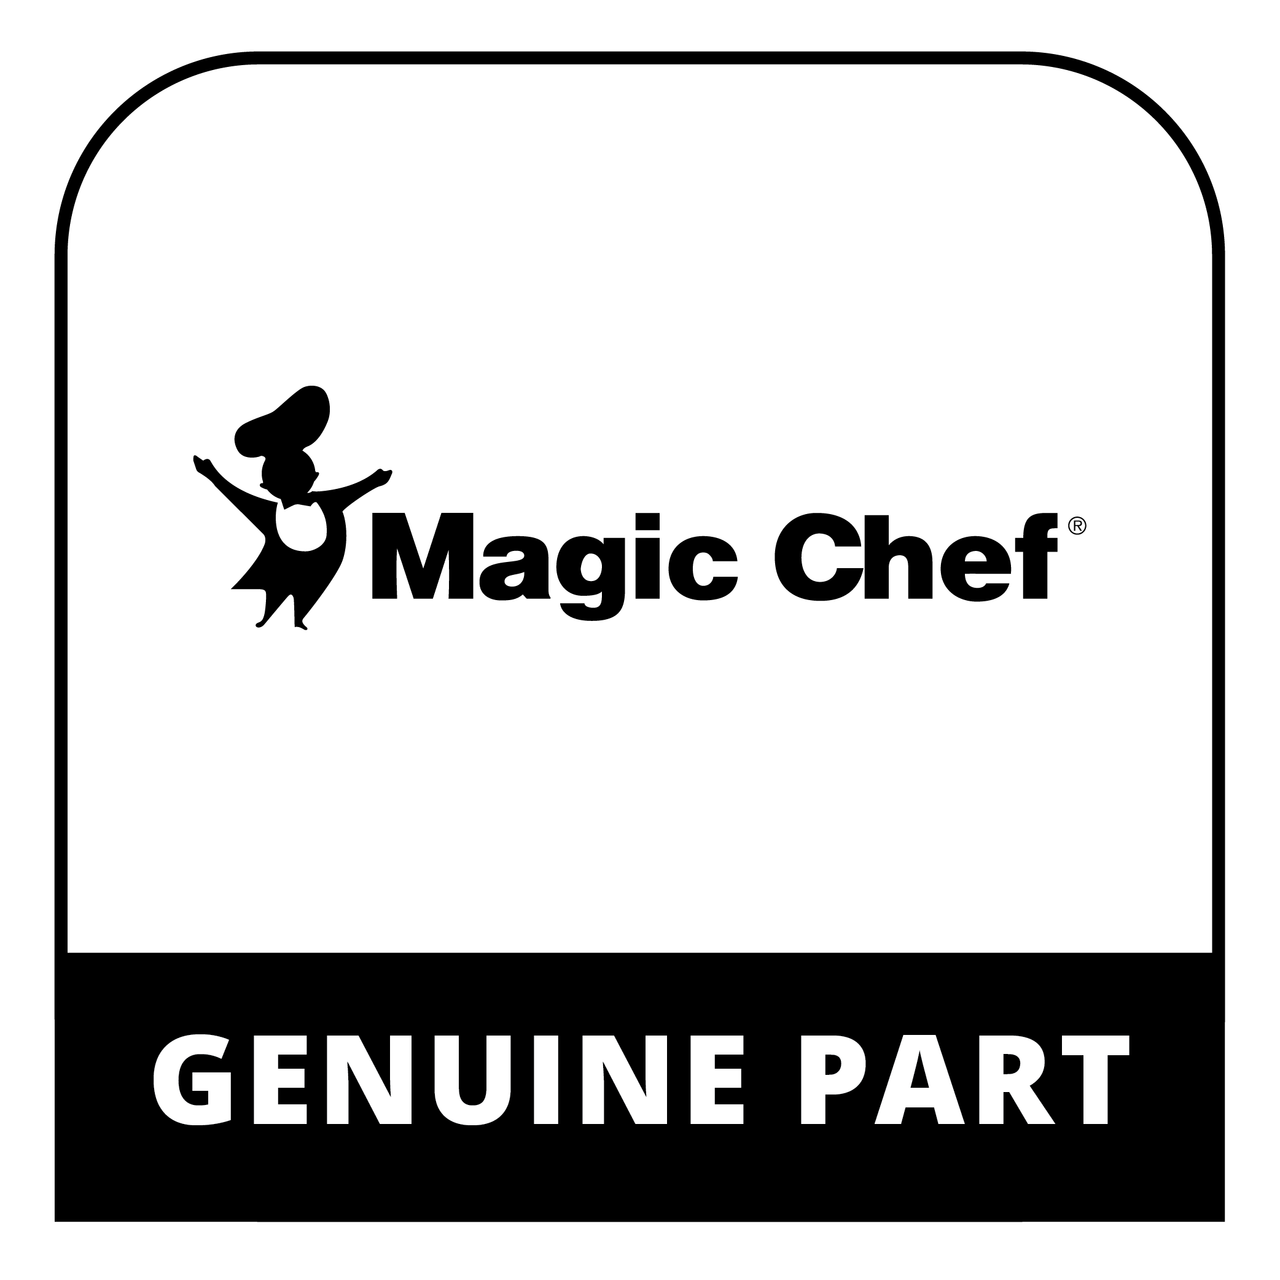 Magic Chef 301149A320 - CRISPER COVER (HMCR440 SERIES) - Genuine Magic Chef Part